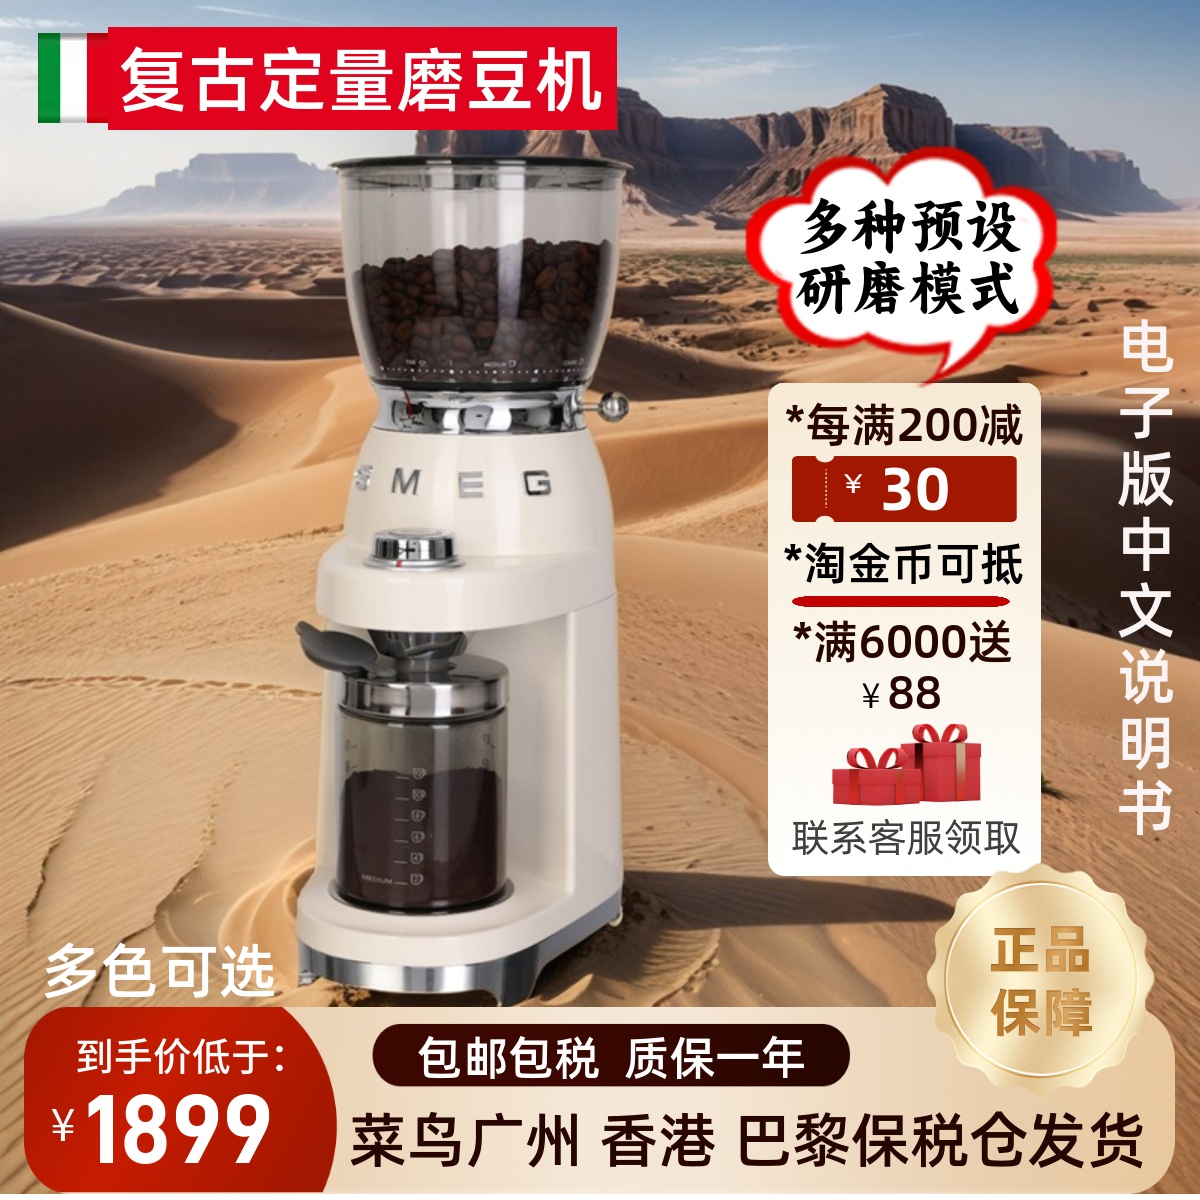 SMEG意大利进口 CGF01复古咖啡豆研磨机磨粉器磨豆机浓缩意式美式 厨房电器 咖啡机 原图主图